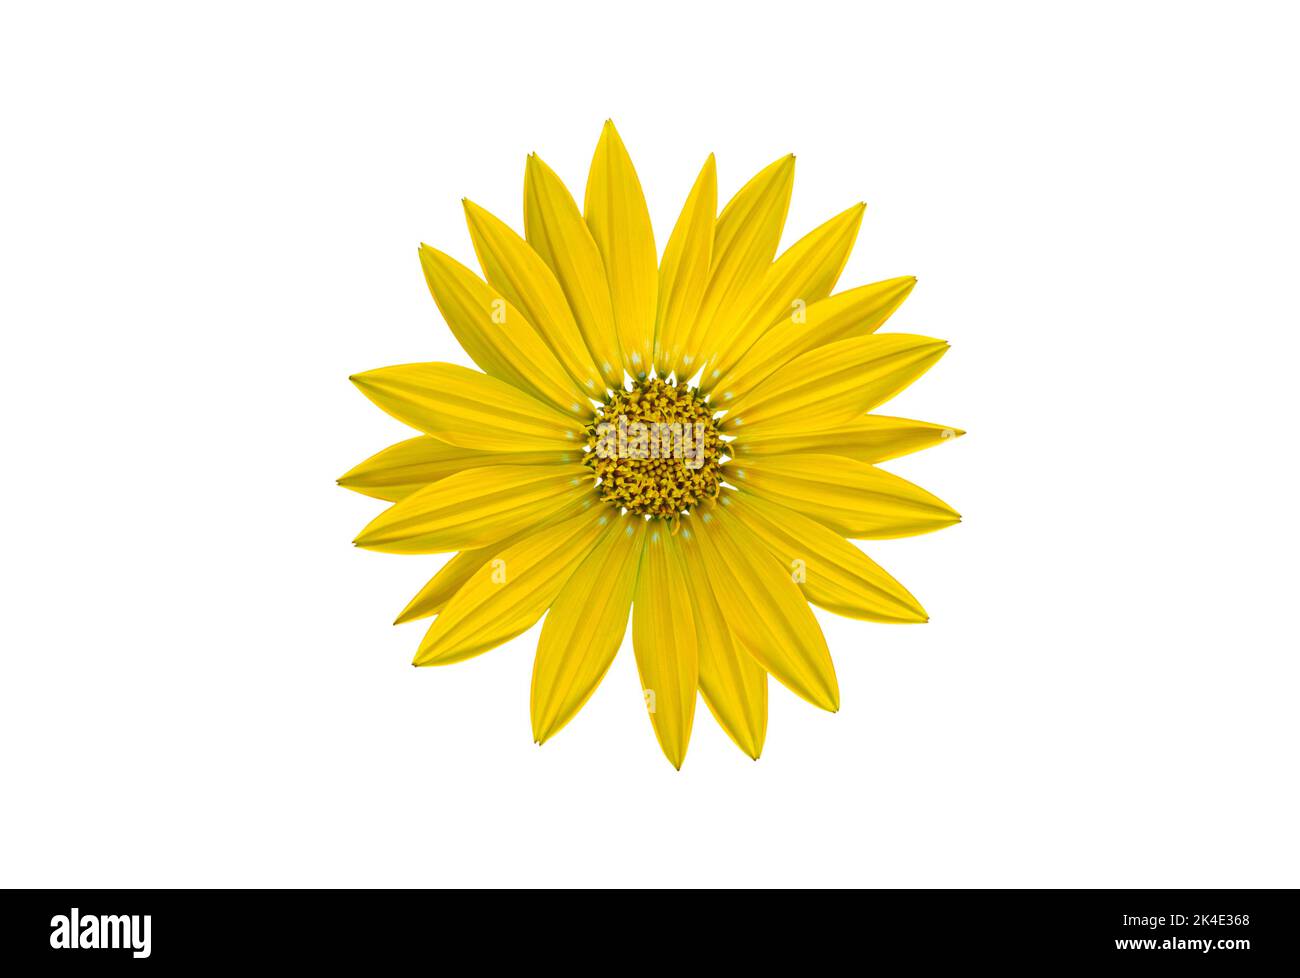 Flor amarilla del tesoro, aislada sobre un fondo blanco Foto de stock